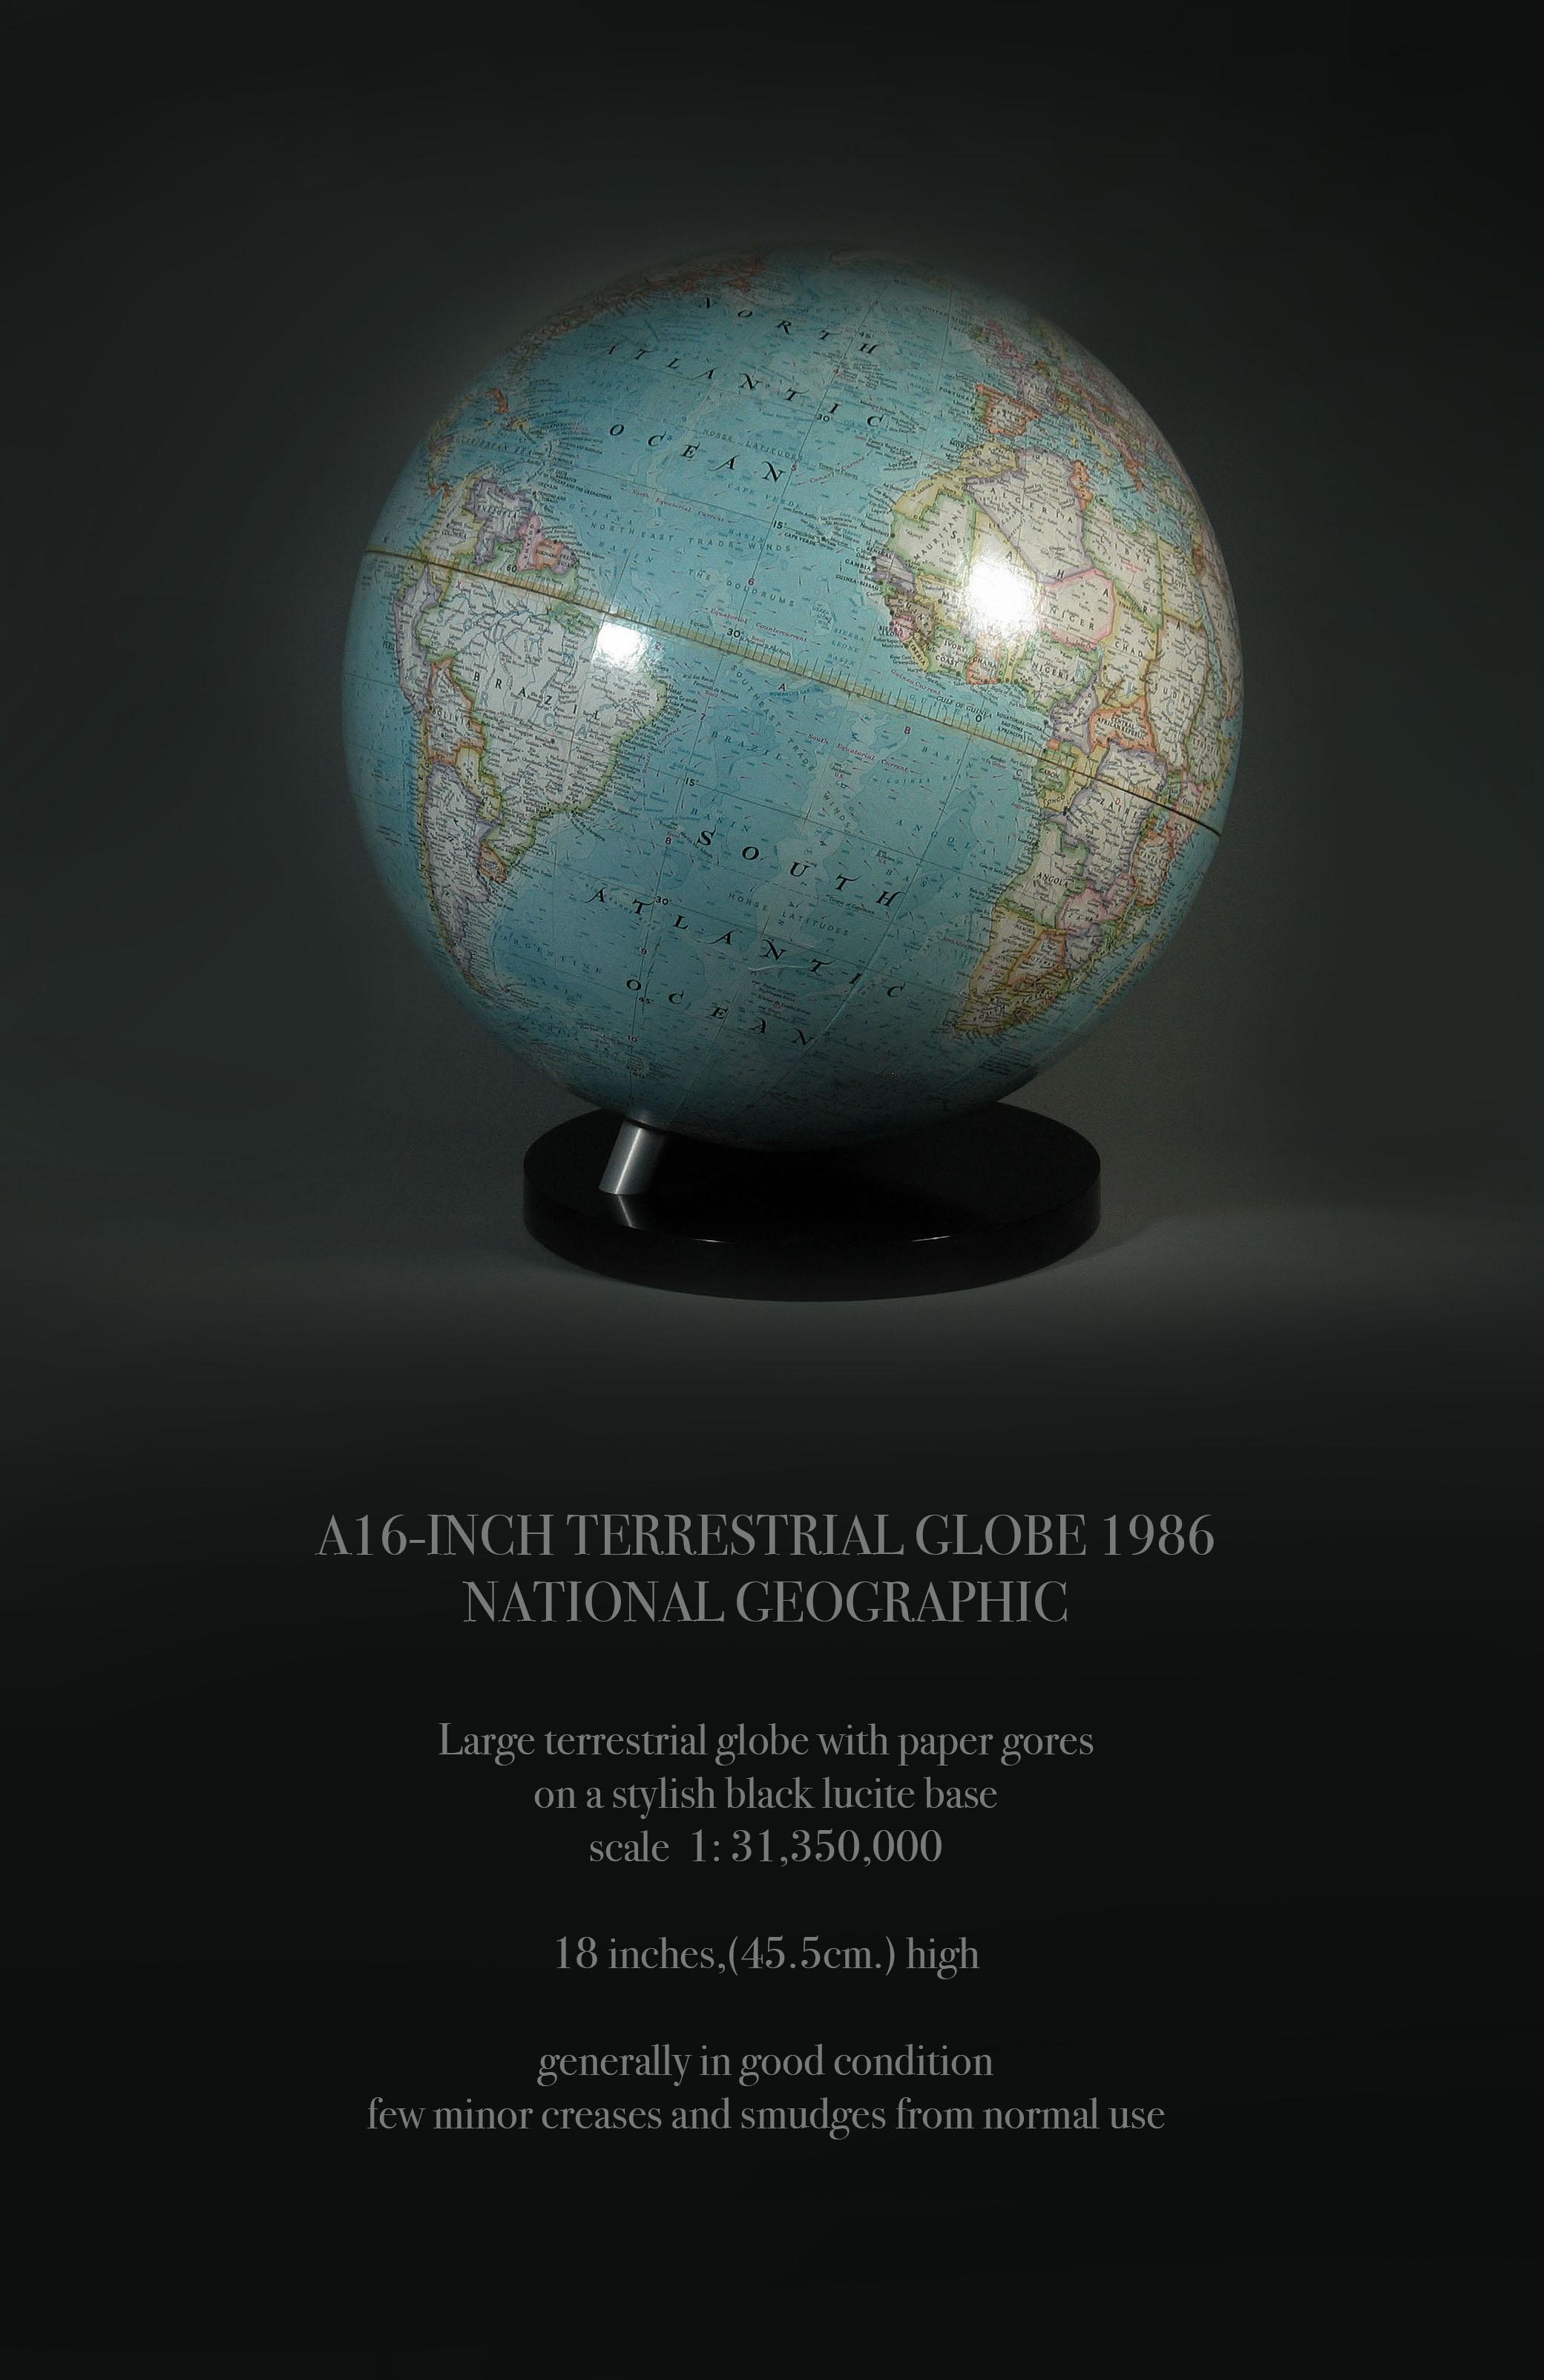 UN GLOBE TERRESTRE DE 16 POUCES 1986
NATIONAL GEOGRAPHIC

Grand globe terrestre avec gores en papier
sur une élégante base en lucite noire
échelle  1: 31,350,000

18